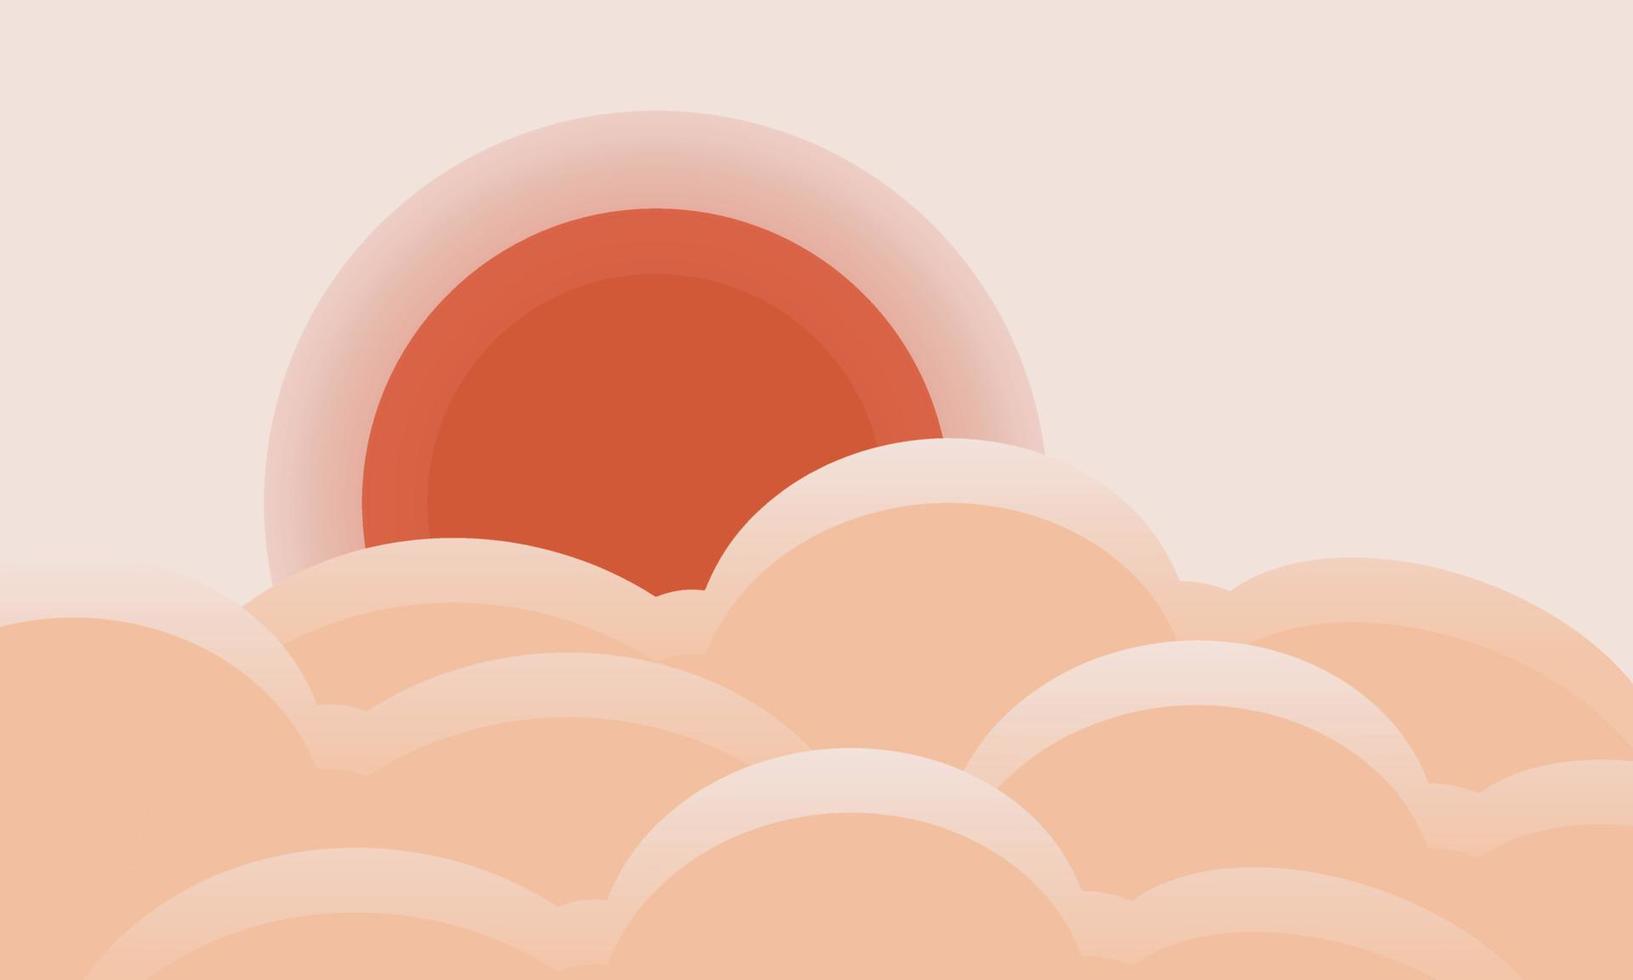 vektor illustration av abstrakt moln och Sol mönster